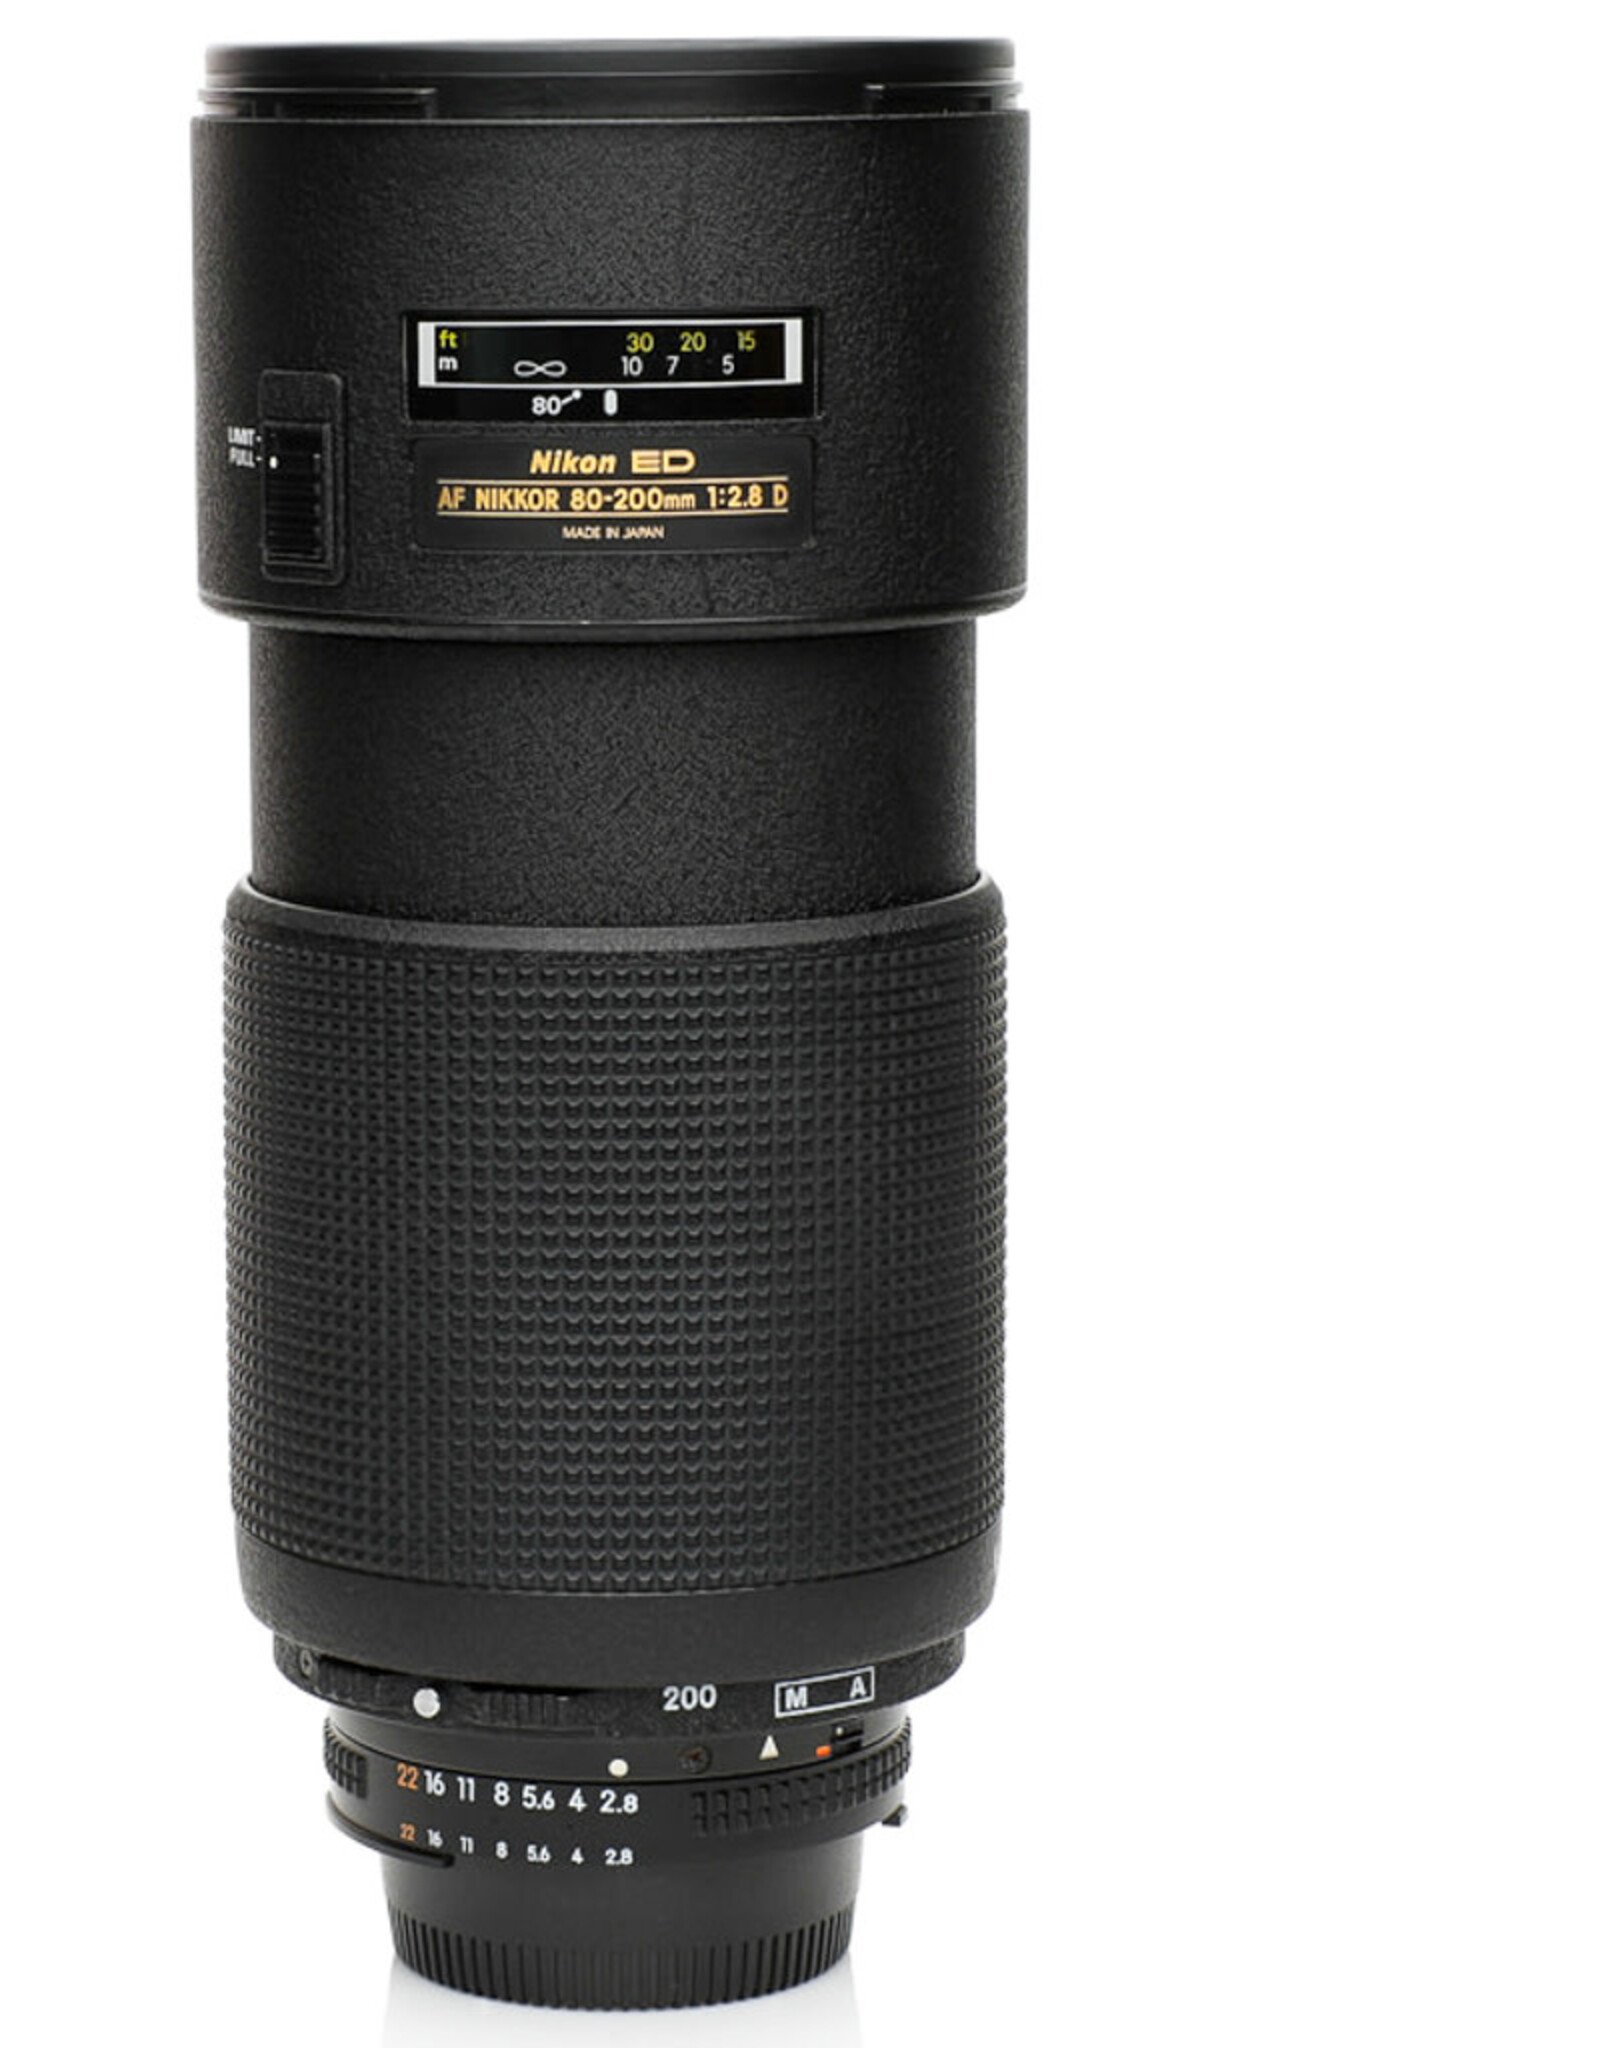 Nikon Nikon AF Zoom-NIKKOR 80-200mm f/2.8 D ED Lens